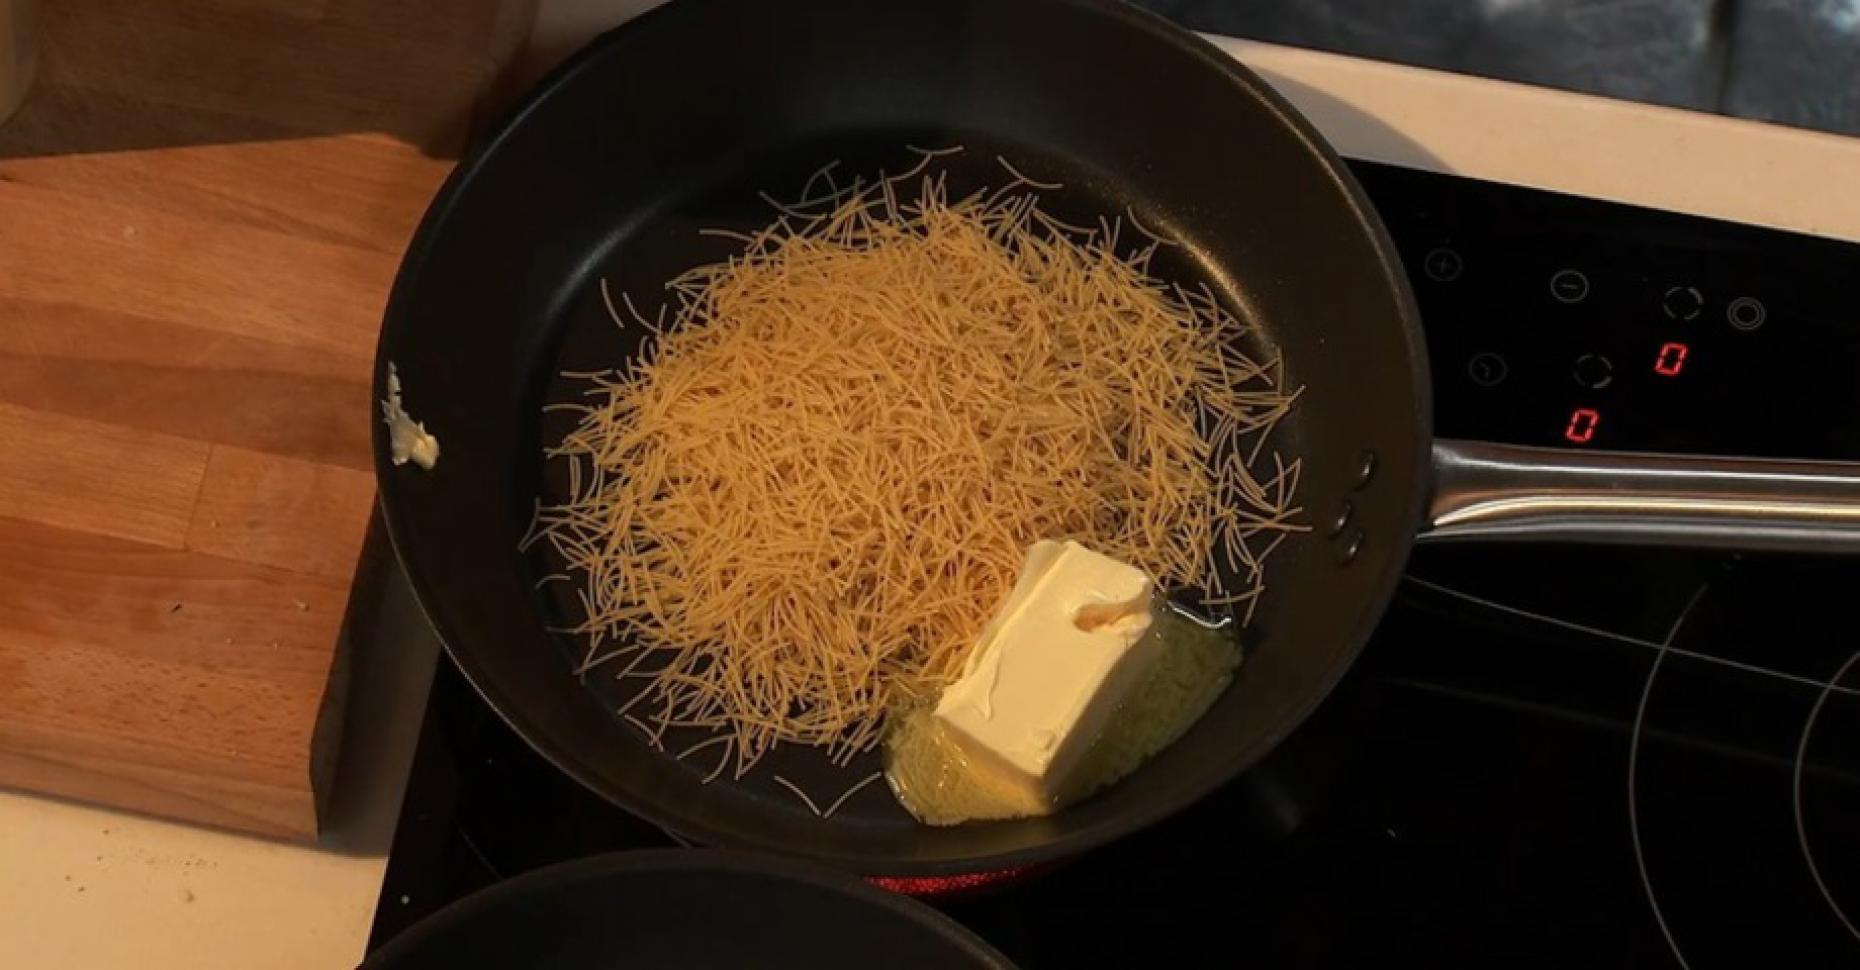 Как приготовить макароны на сковороде без варки? 6 рецептов жареных макарон